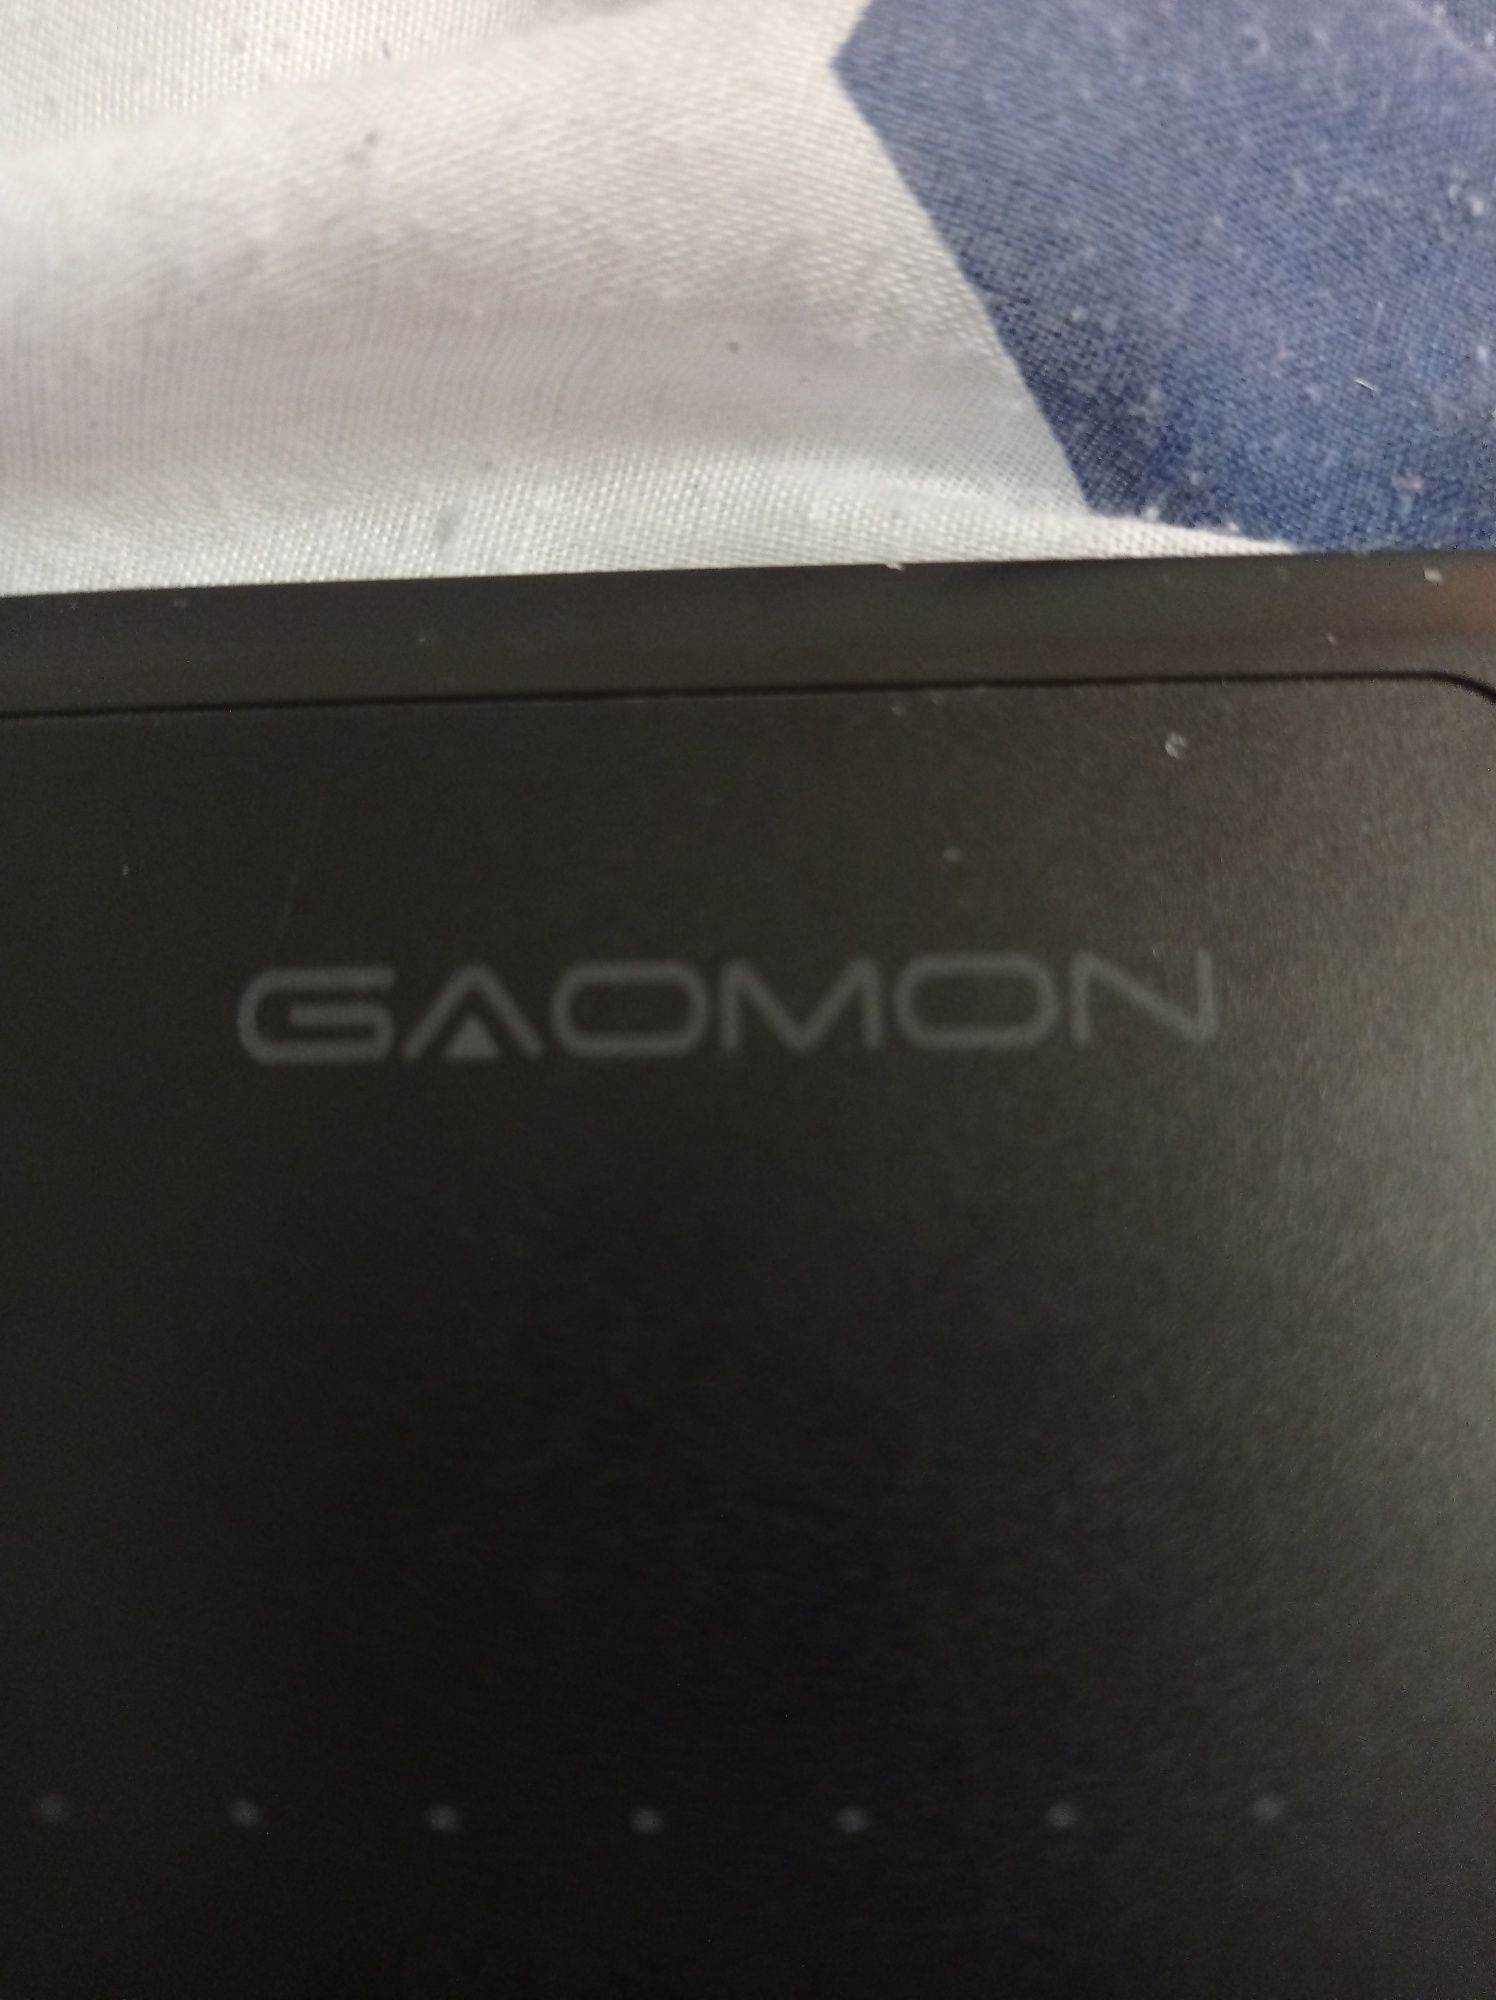 Tablet graficzny Gaomon s620 prawie nowy